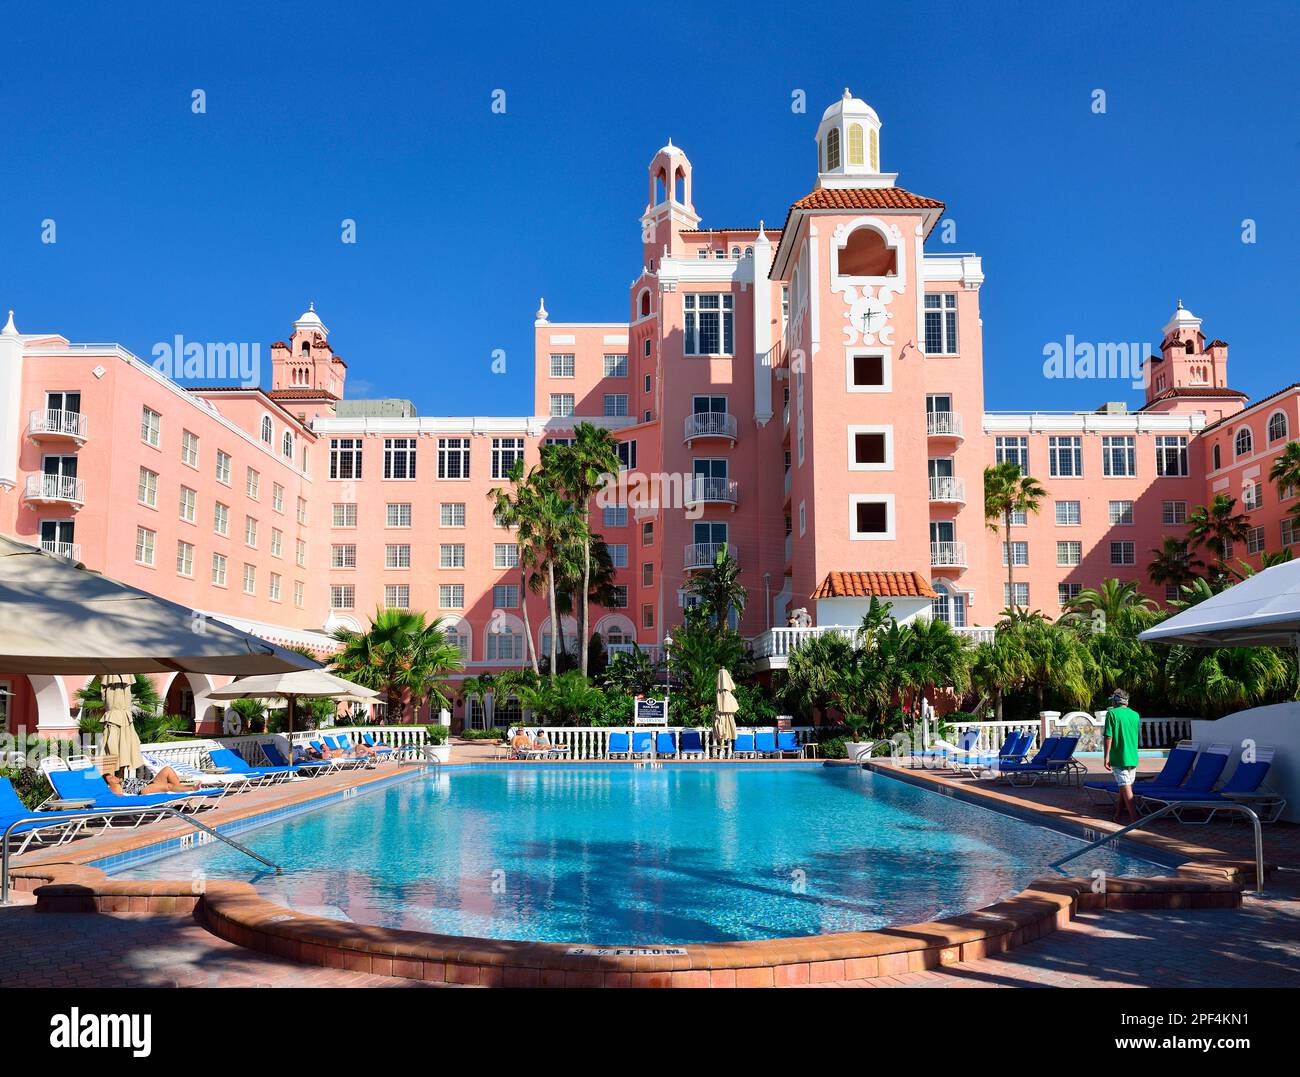 Don Cesar Hotel,Pink Palace, St.Petes Beach,St.Petersburg Florida USA Stock Photo